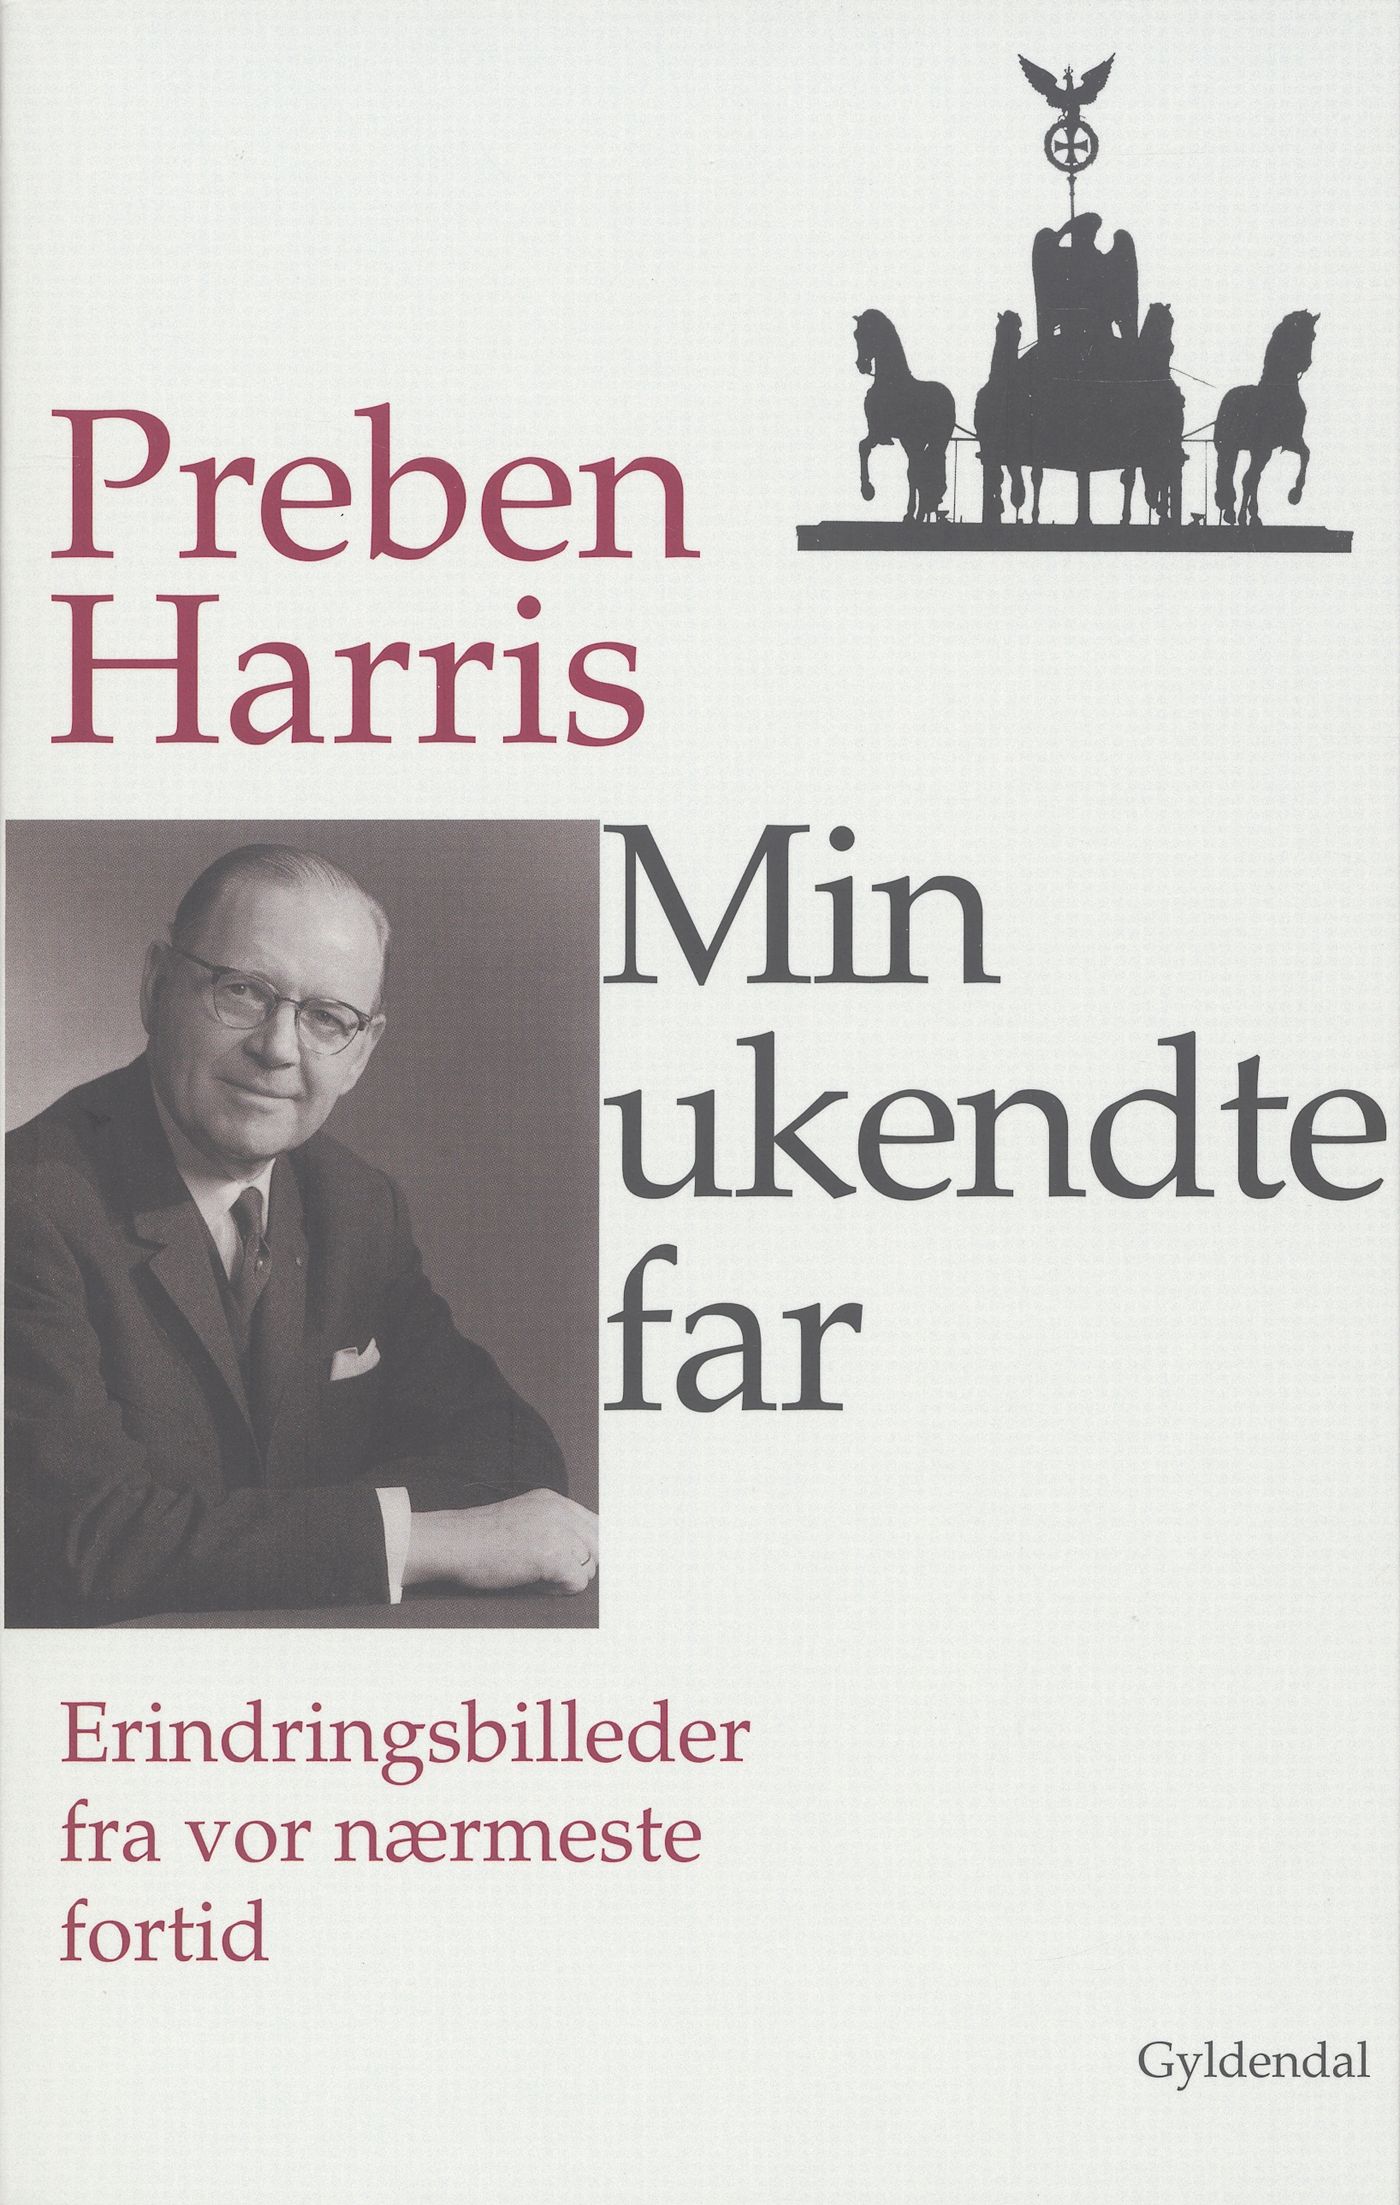 Min ukendte far, e-bog af Preben Harris